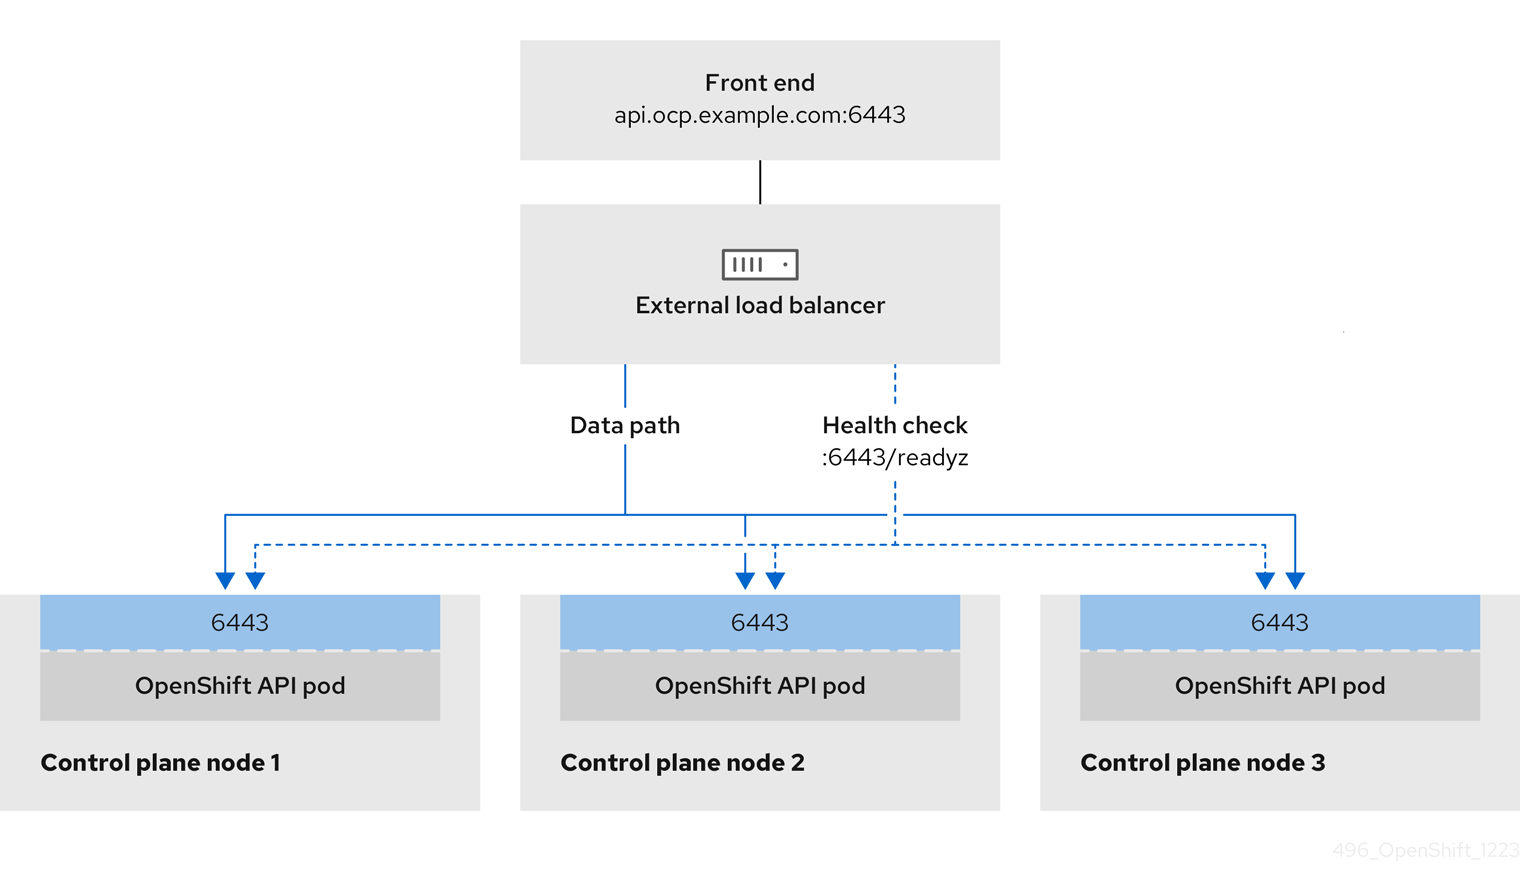 OpenShift Container Platform 환경에서 작동하는 OpenShift API의 네트워크 워크플로 예제를 보여주는 이미지입니다.